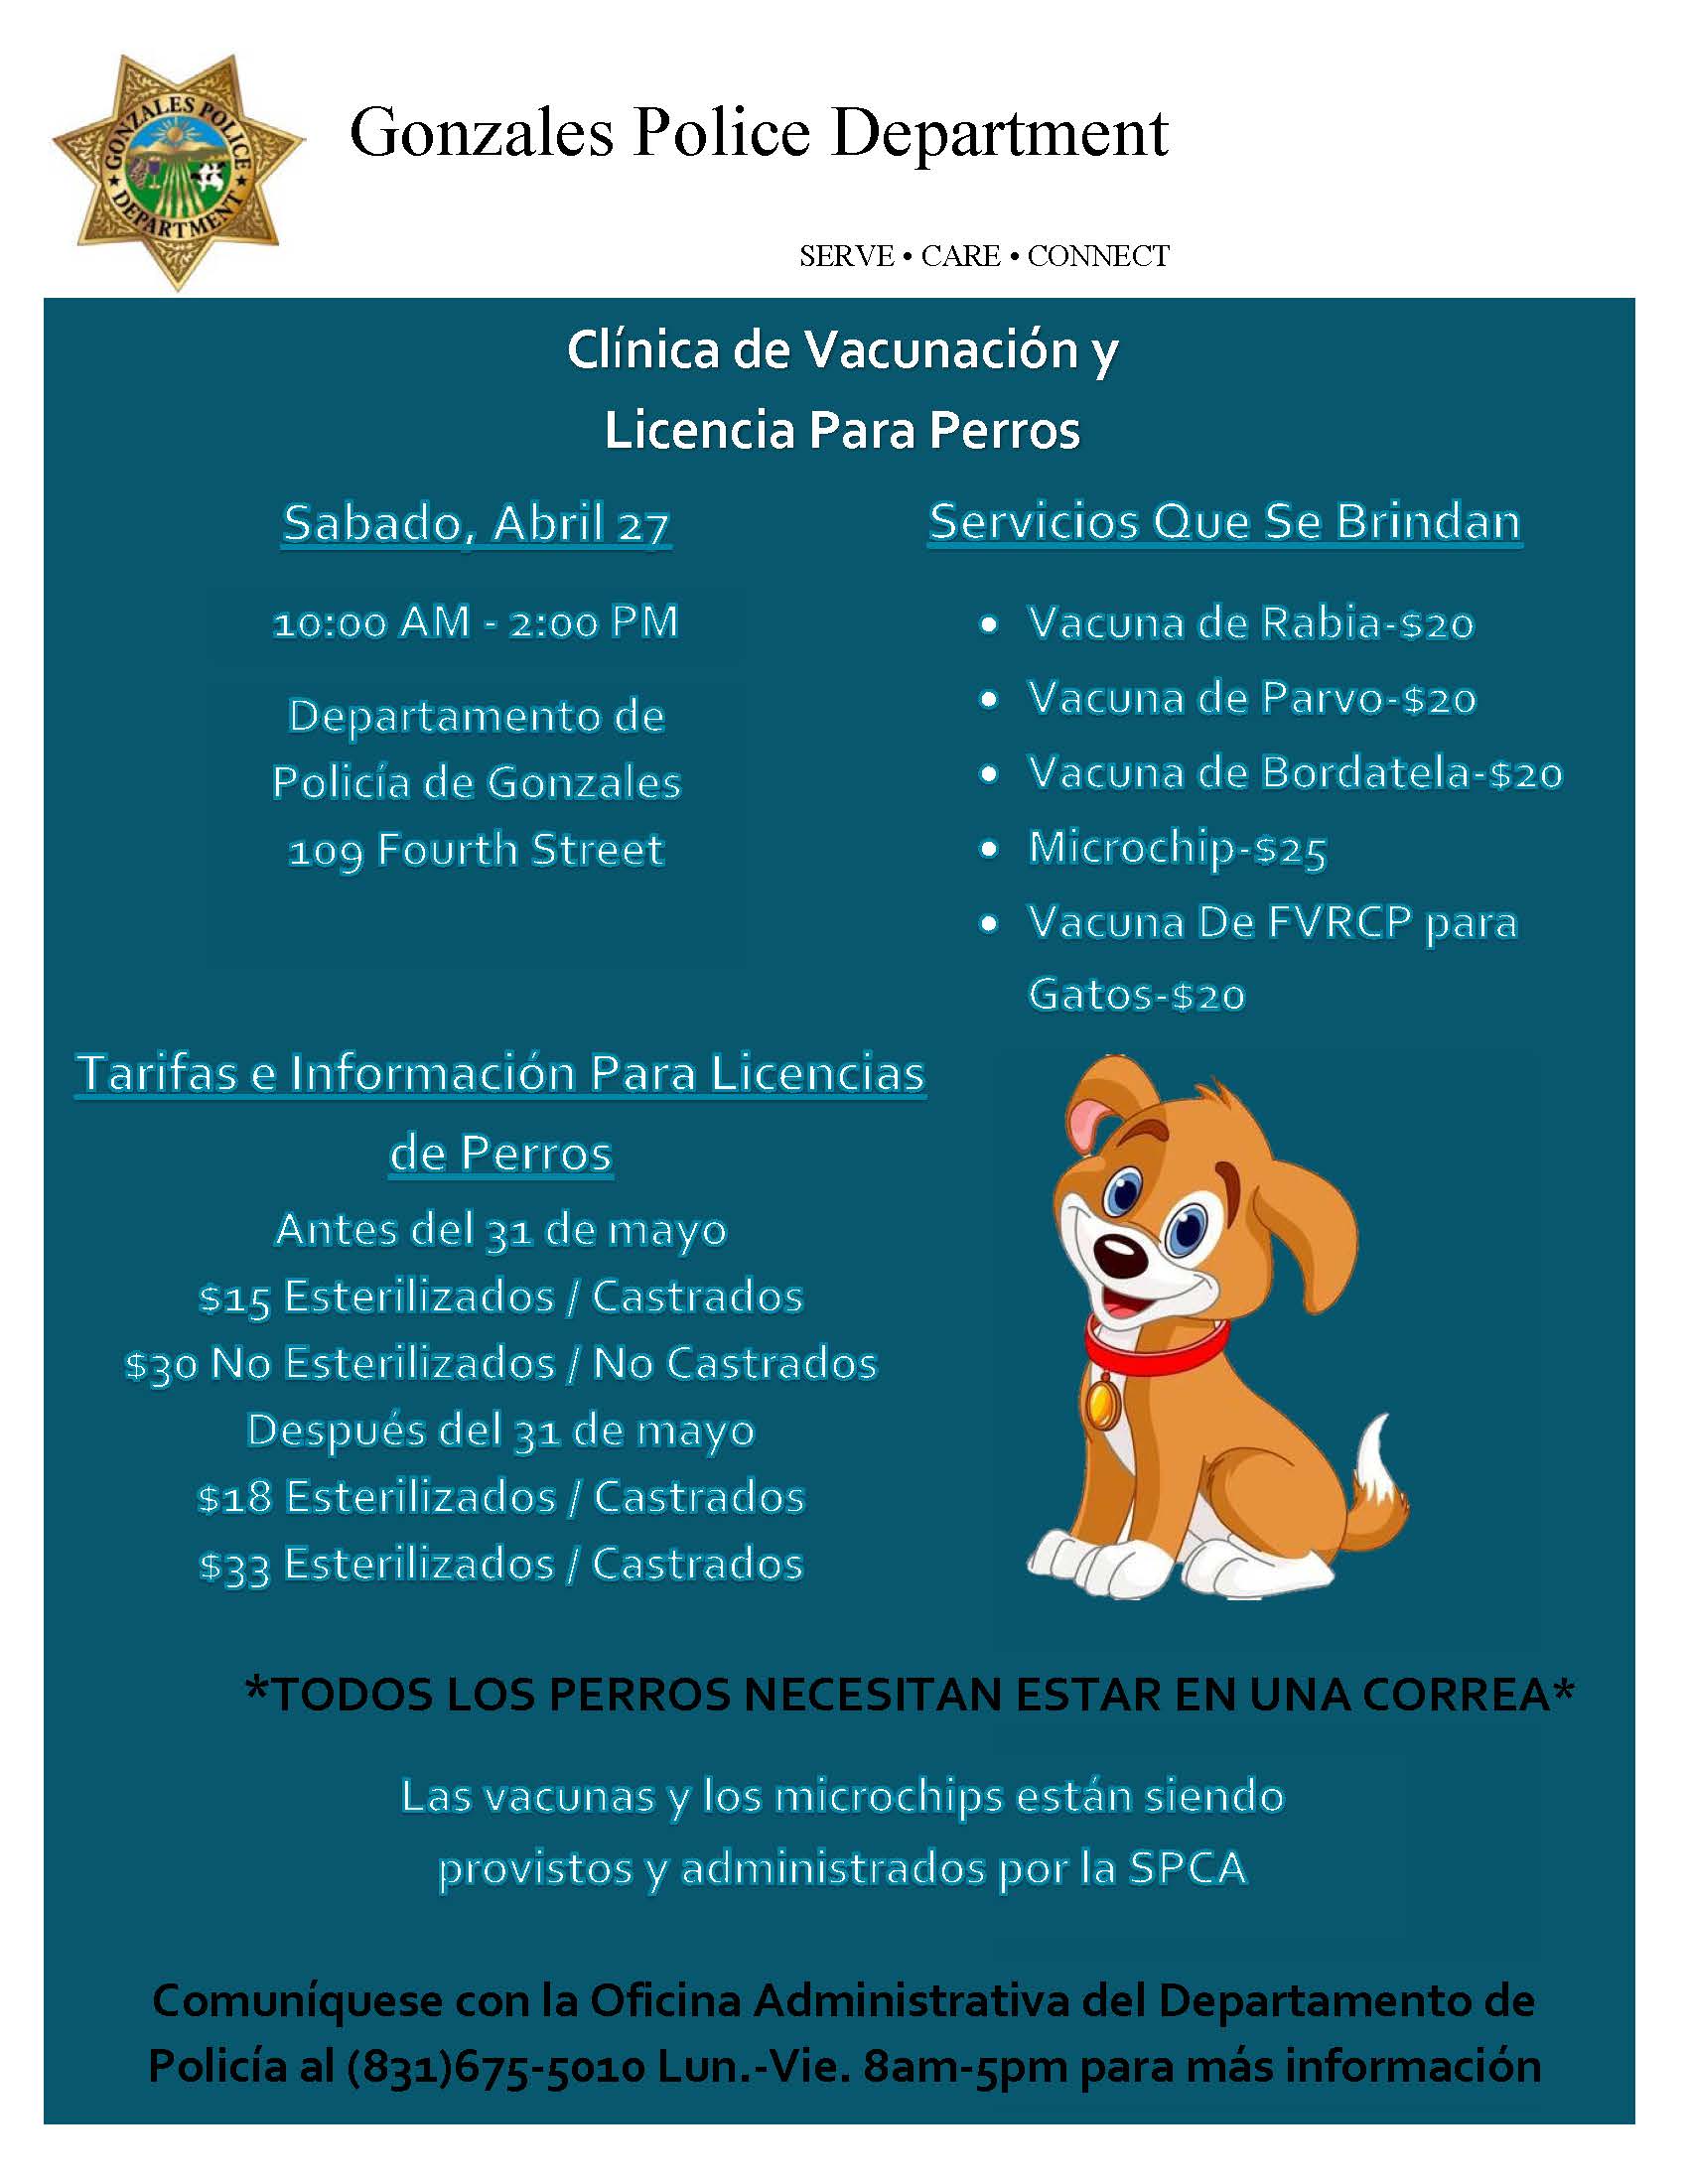 Clinica de Vacunacion & Licencia Para Perros 2019